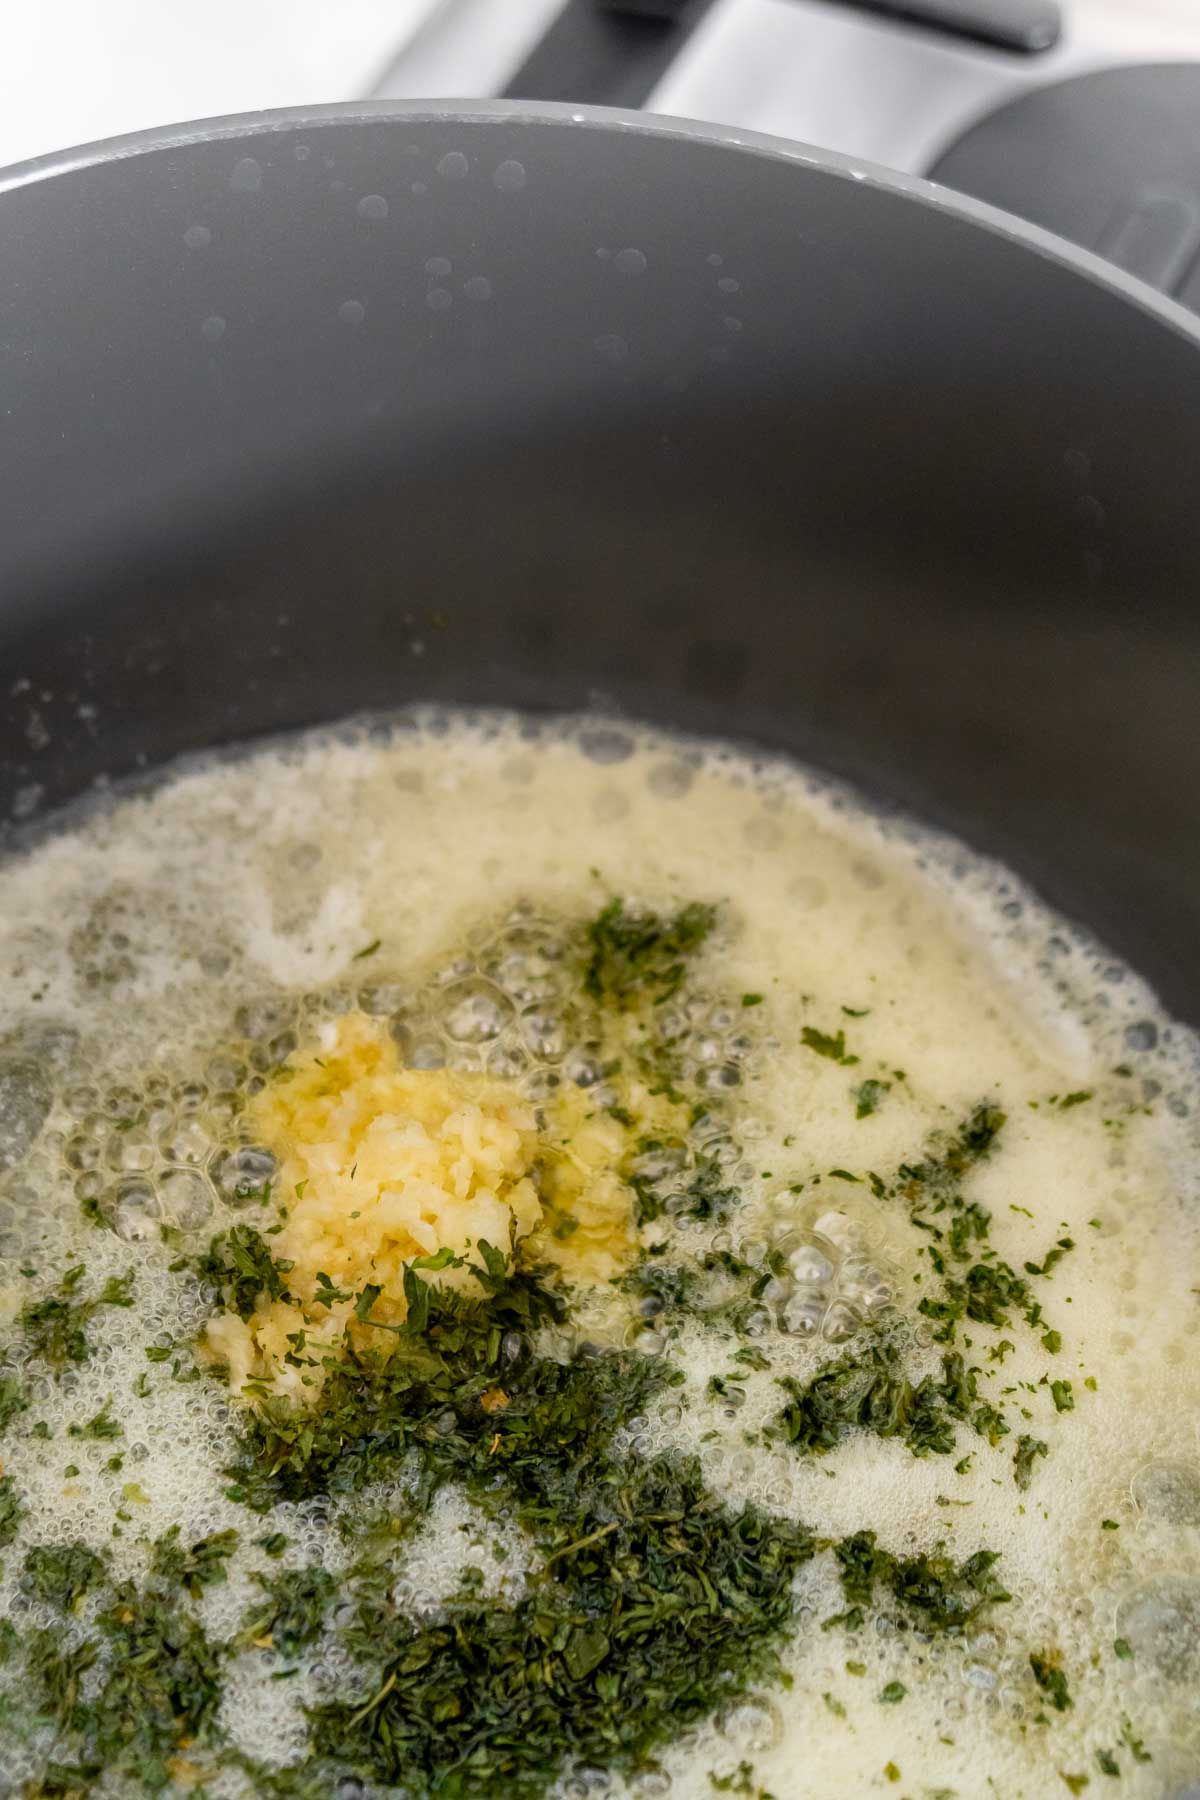 Rozpuštěné máslo s česnekem a petrželkou na pánvi